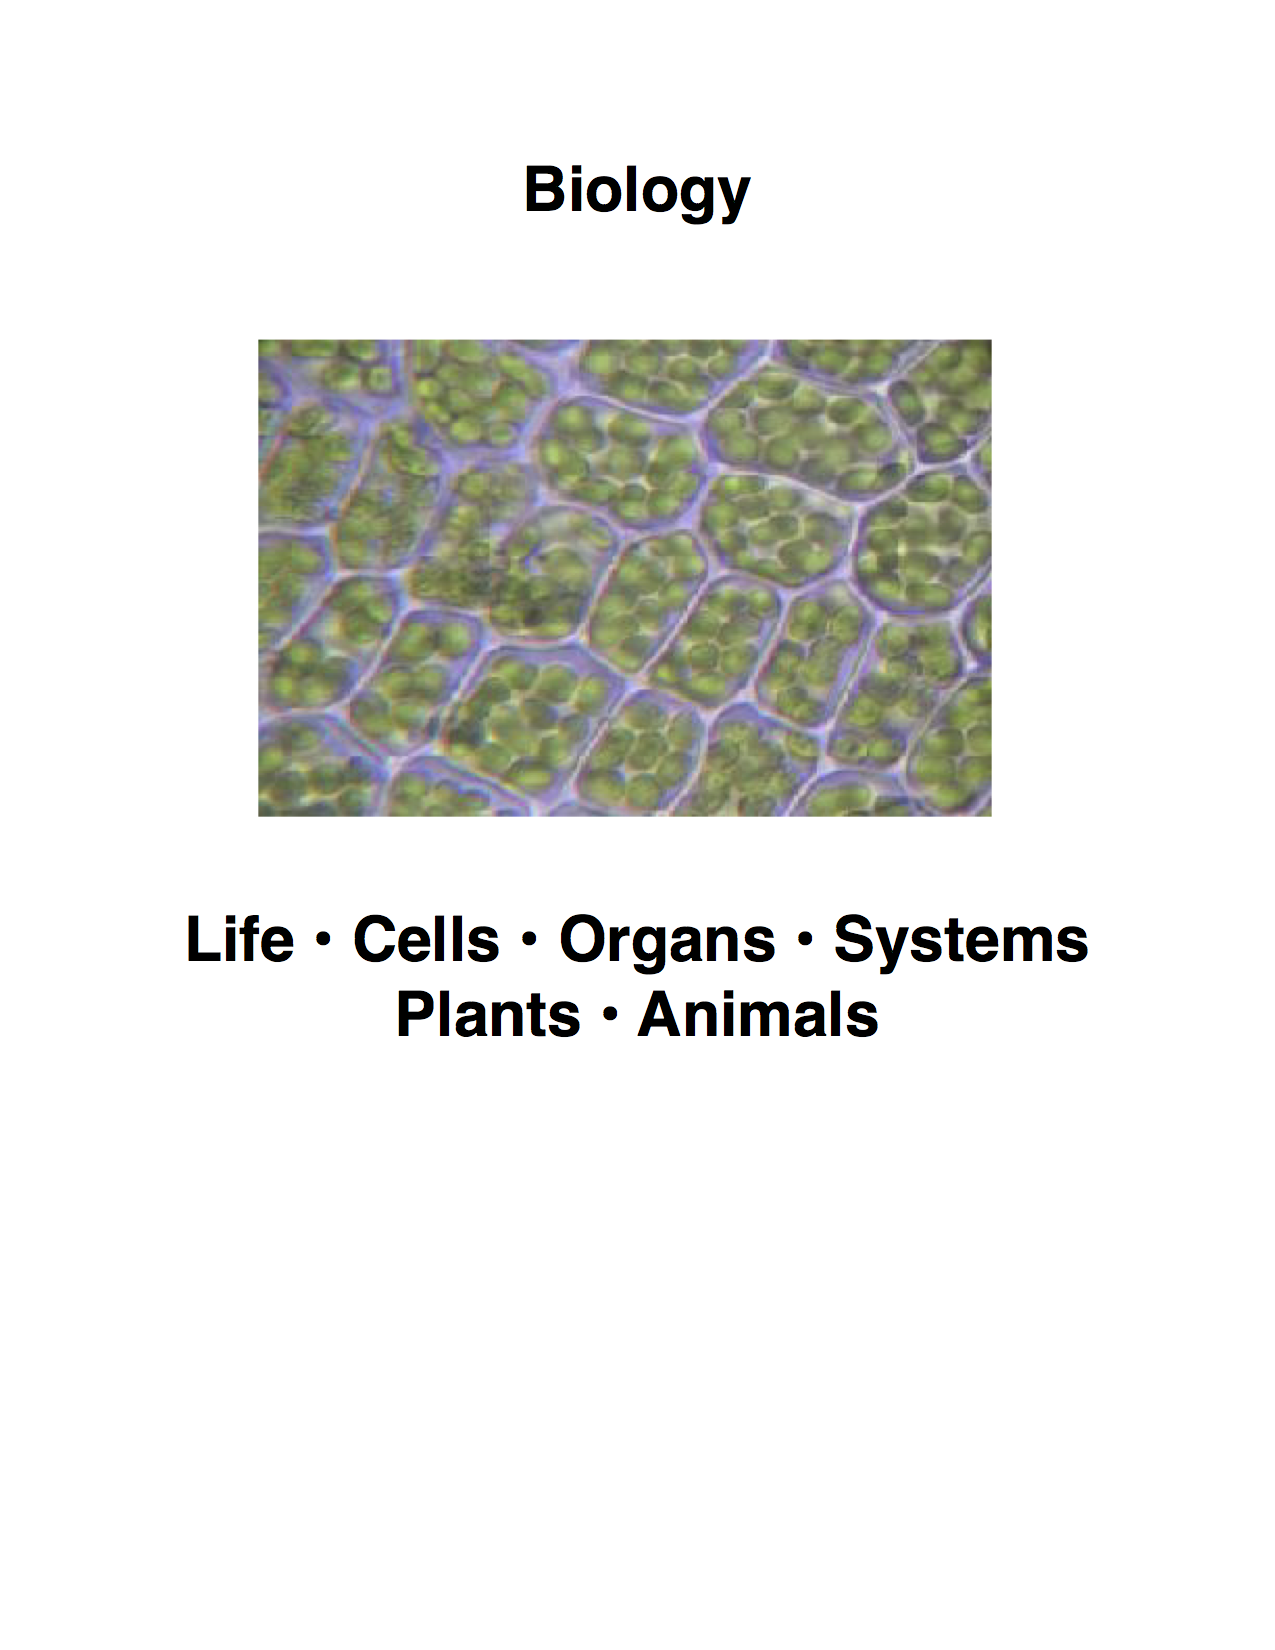 Biology eTextbook